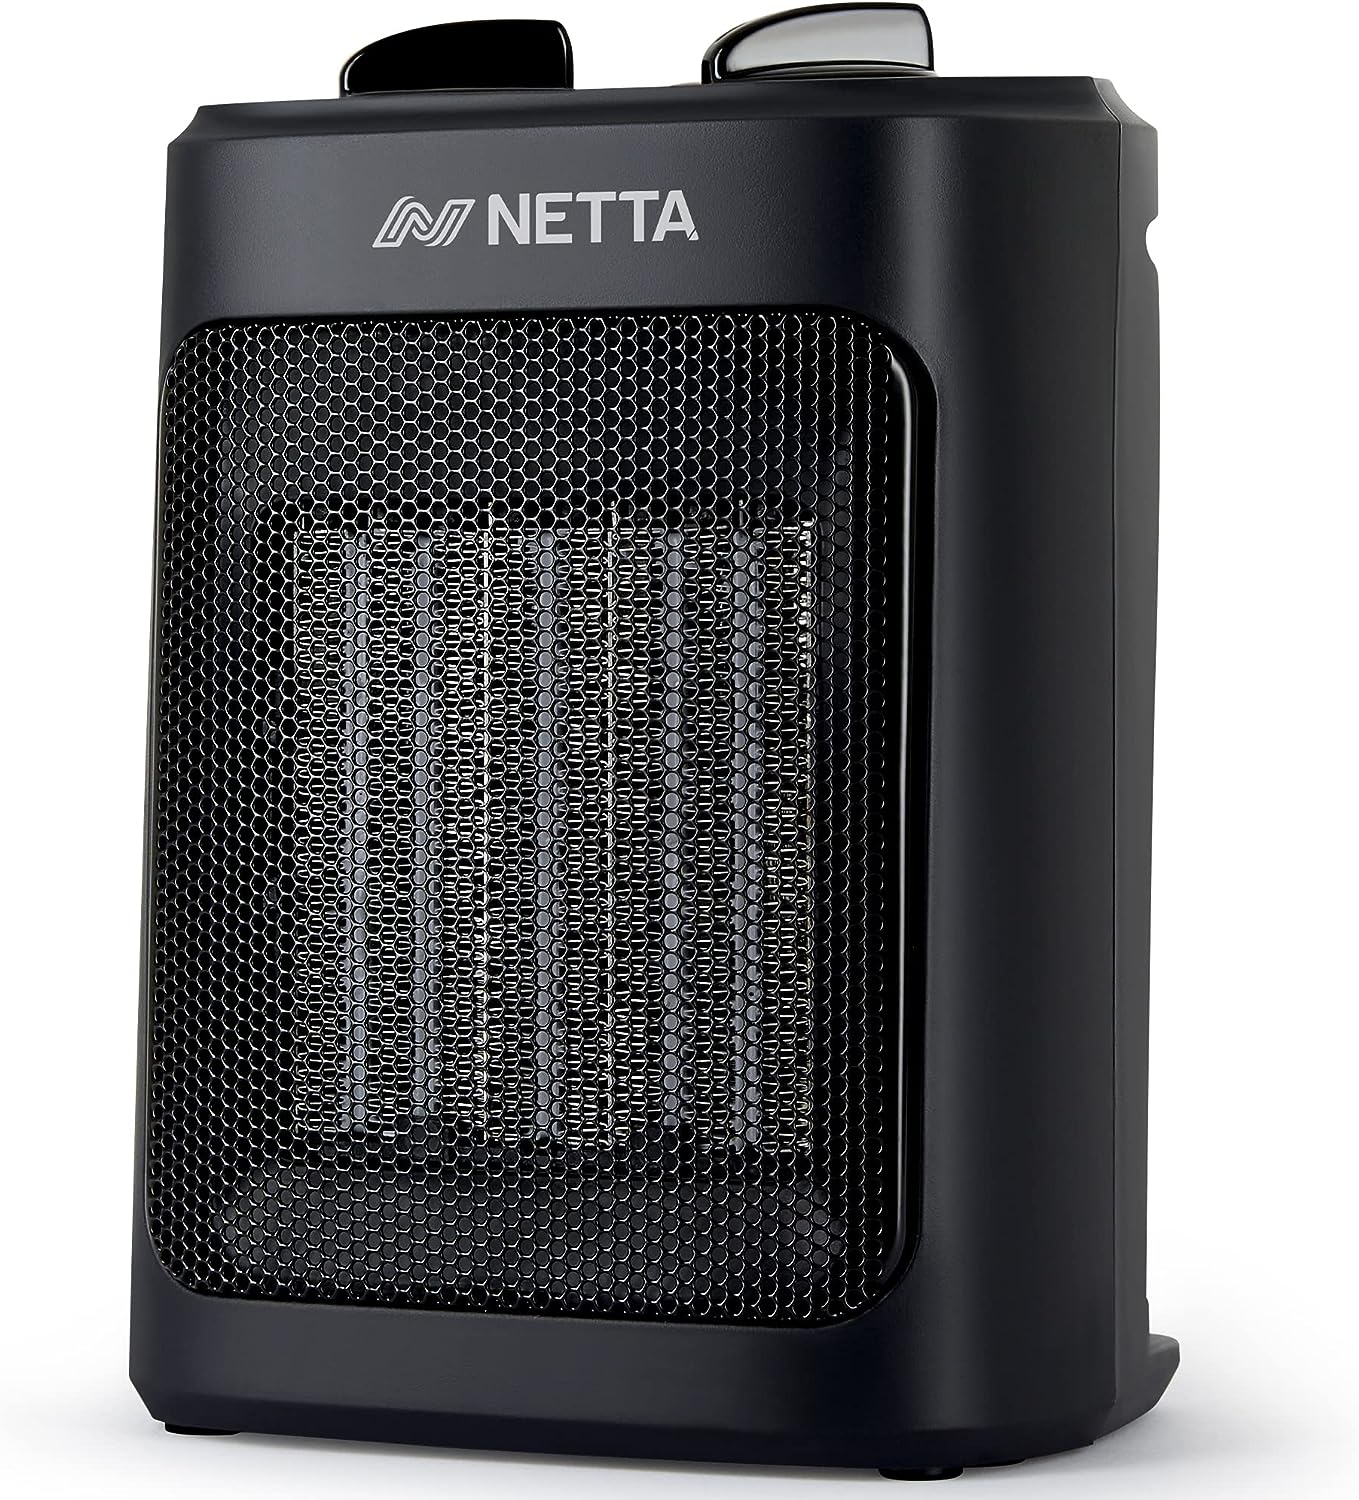 NETTA Heater Ceramic Fan Heater 3 Heat Settings Overheat Protection 2000W